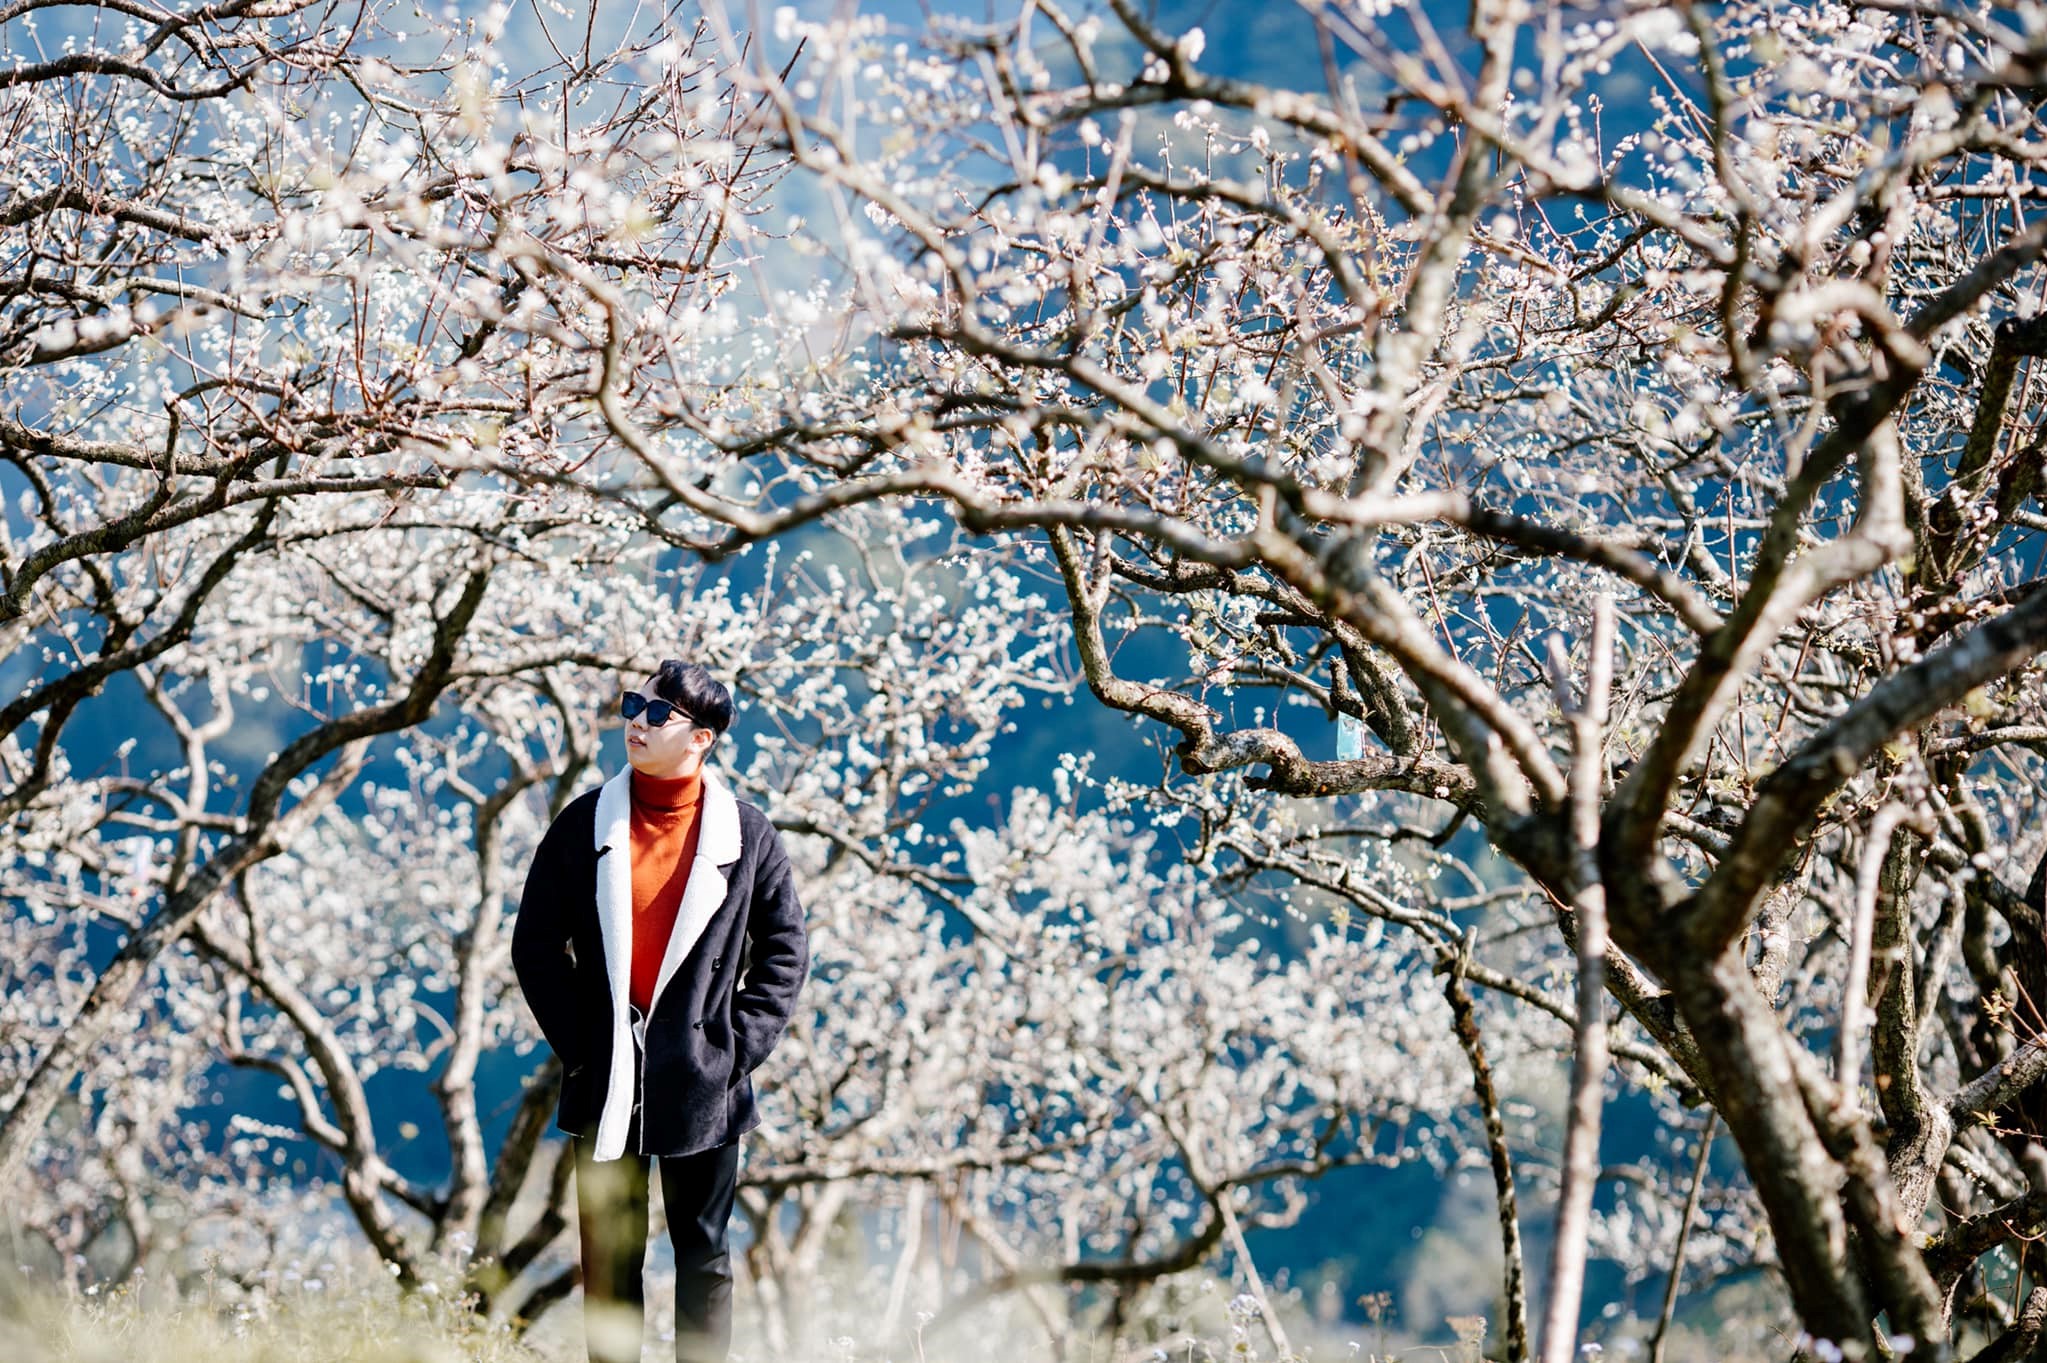  Nhanh nhanh làm chuyến du lịch Mộc Châu 2N1Đ để ngắm hoa mận nở trái mùa, trắng cả một chân trời